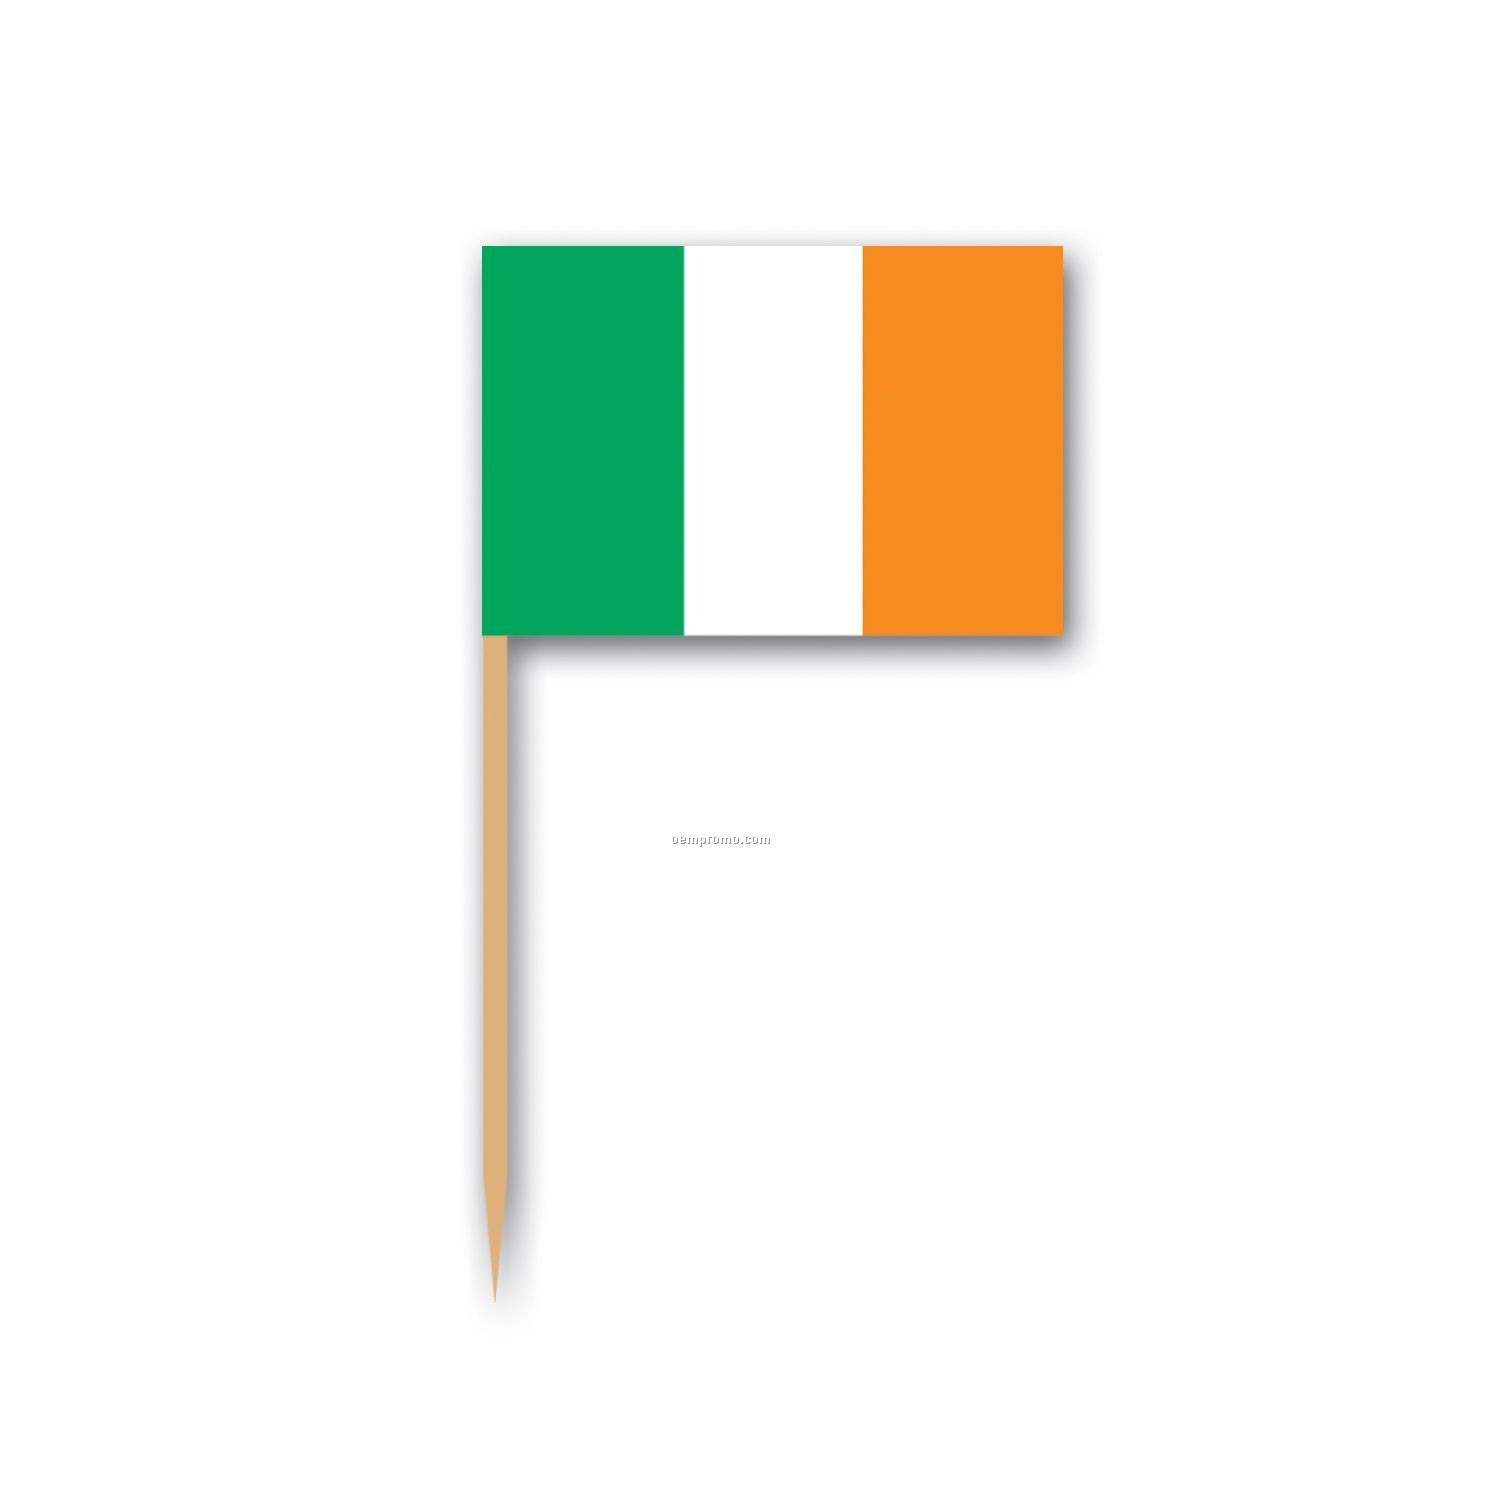 Irish Flag Picks